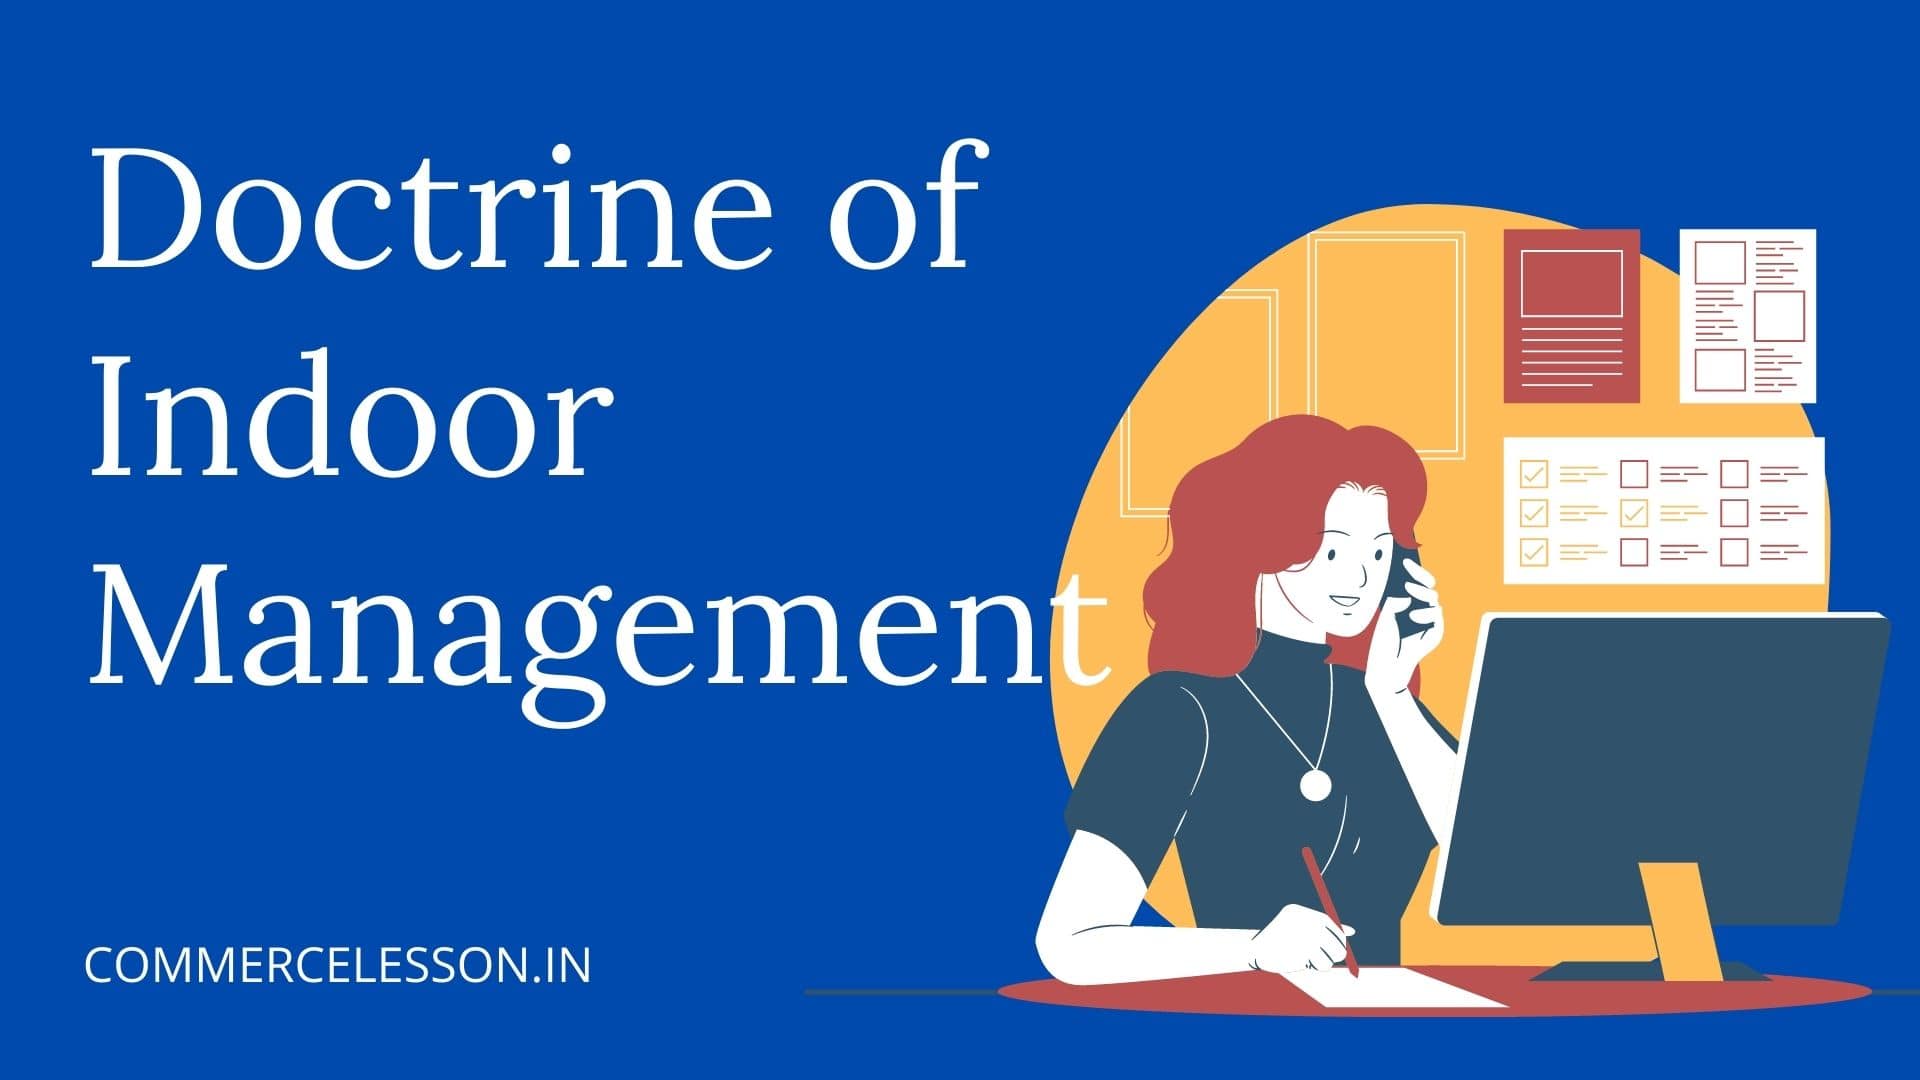 Doctrine of indoor Management